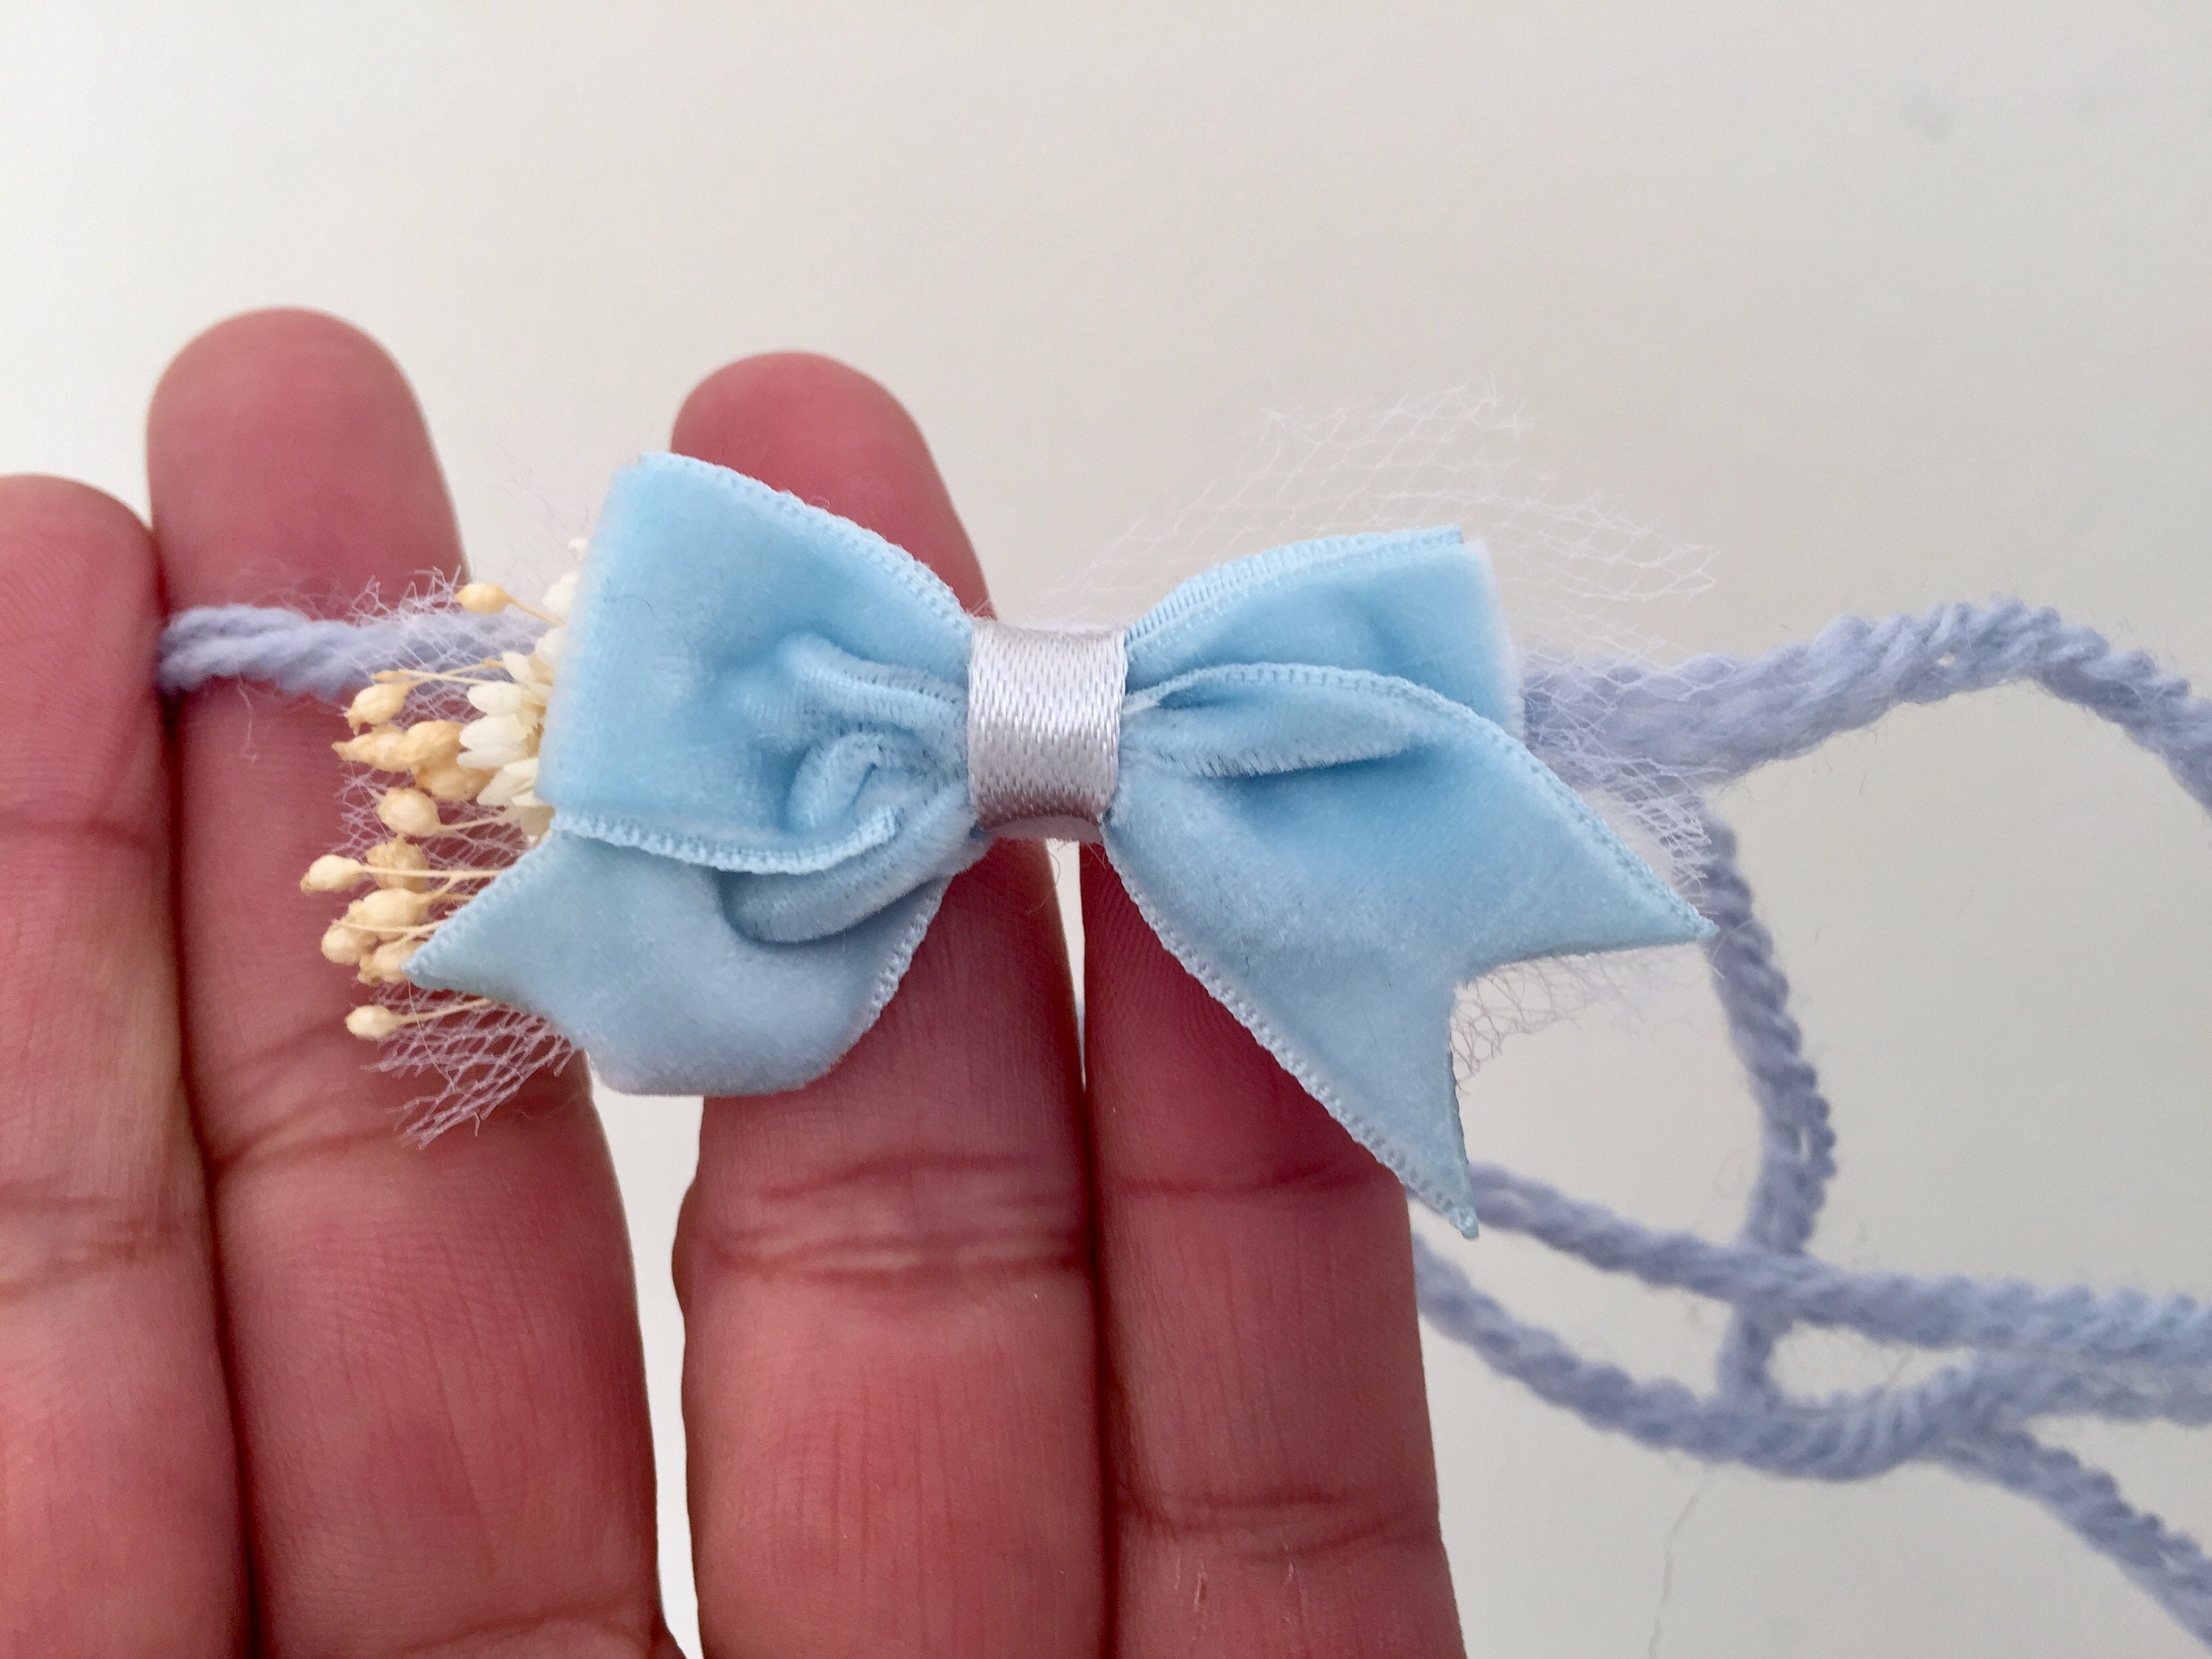 Navy Blue Floral Dainty Bow Headband – Sun & Lace